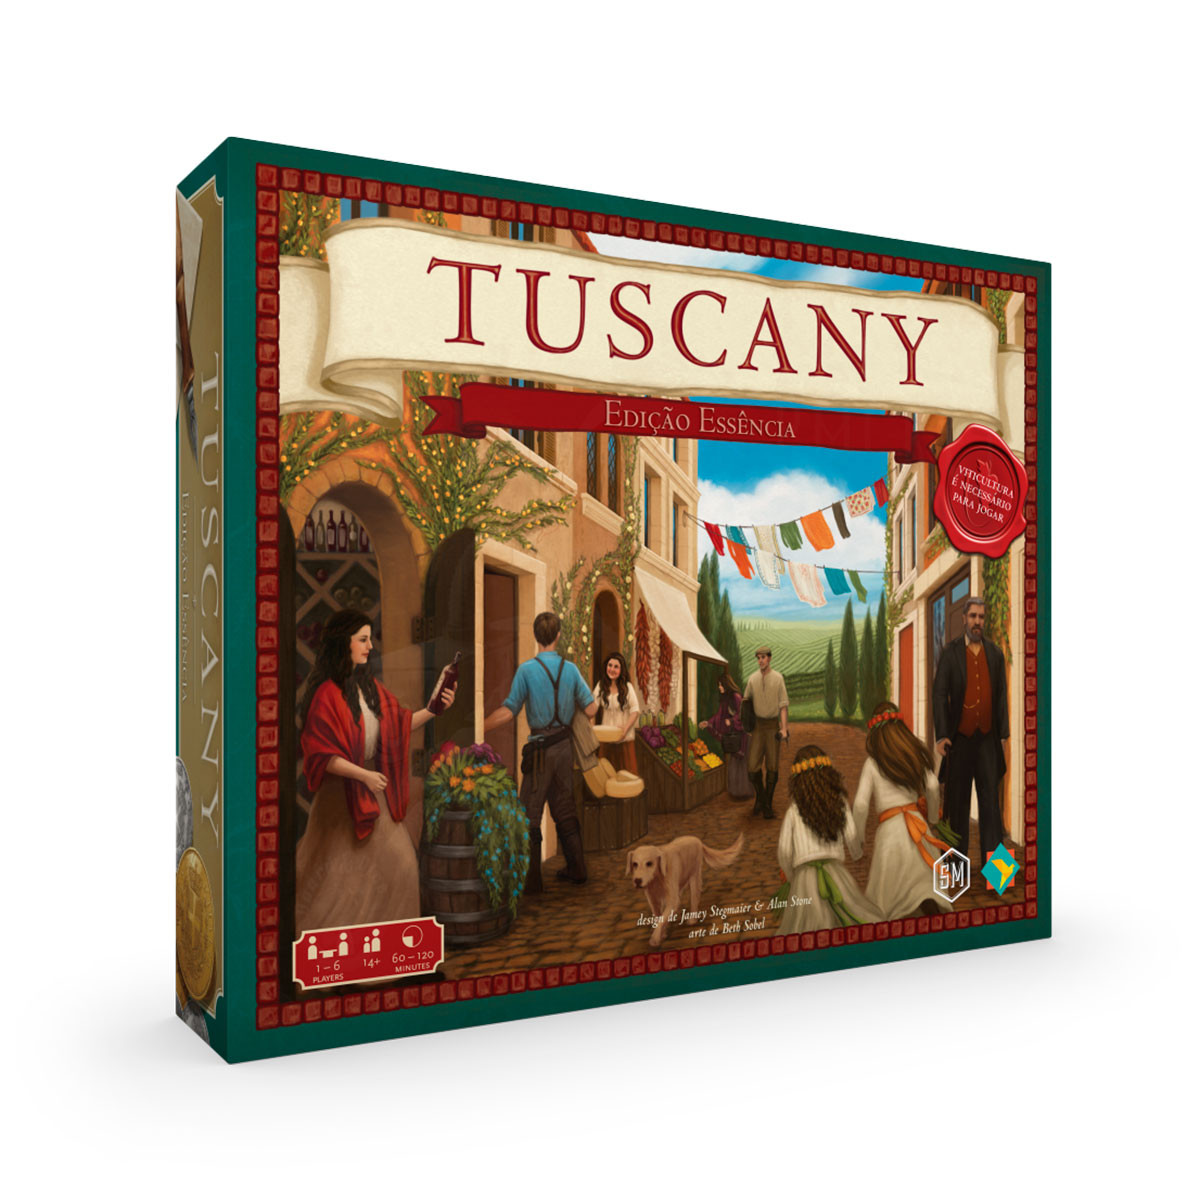 Tuscany: Edição Essencial